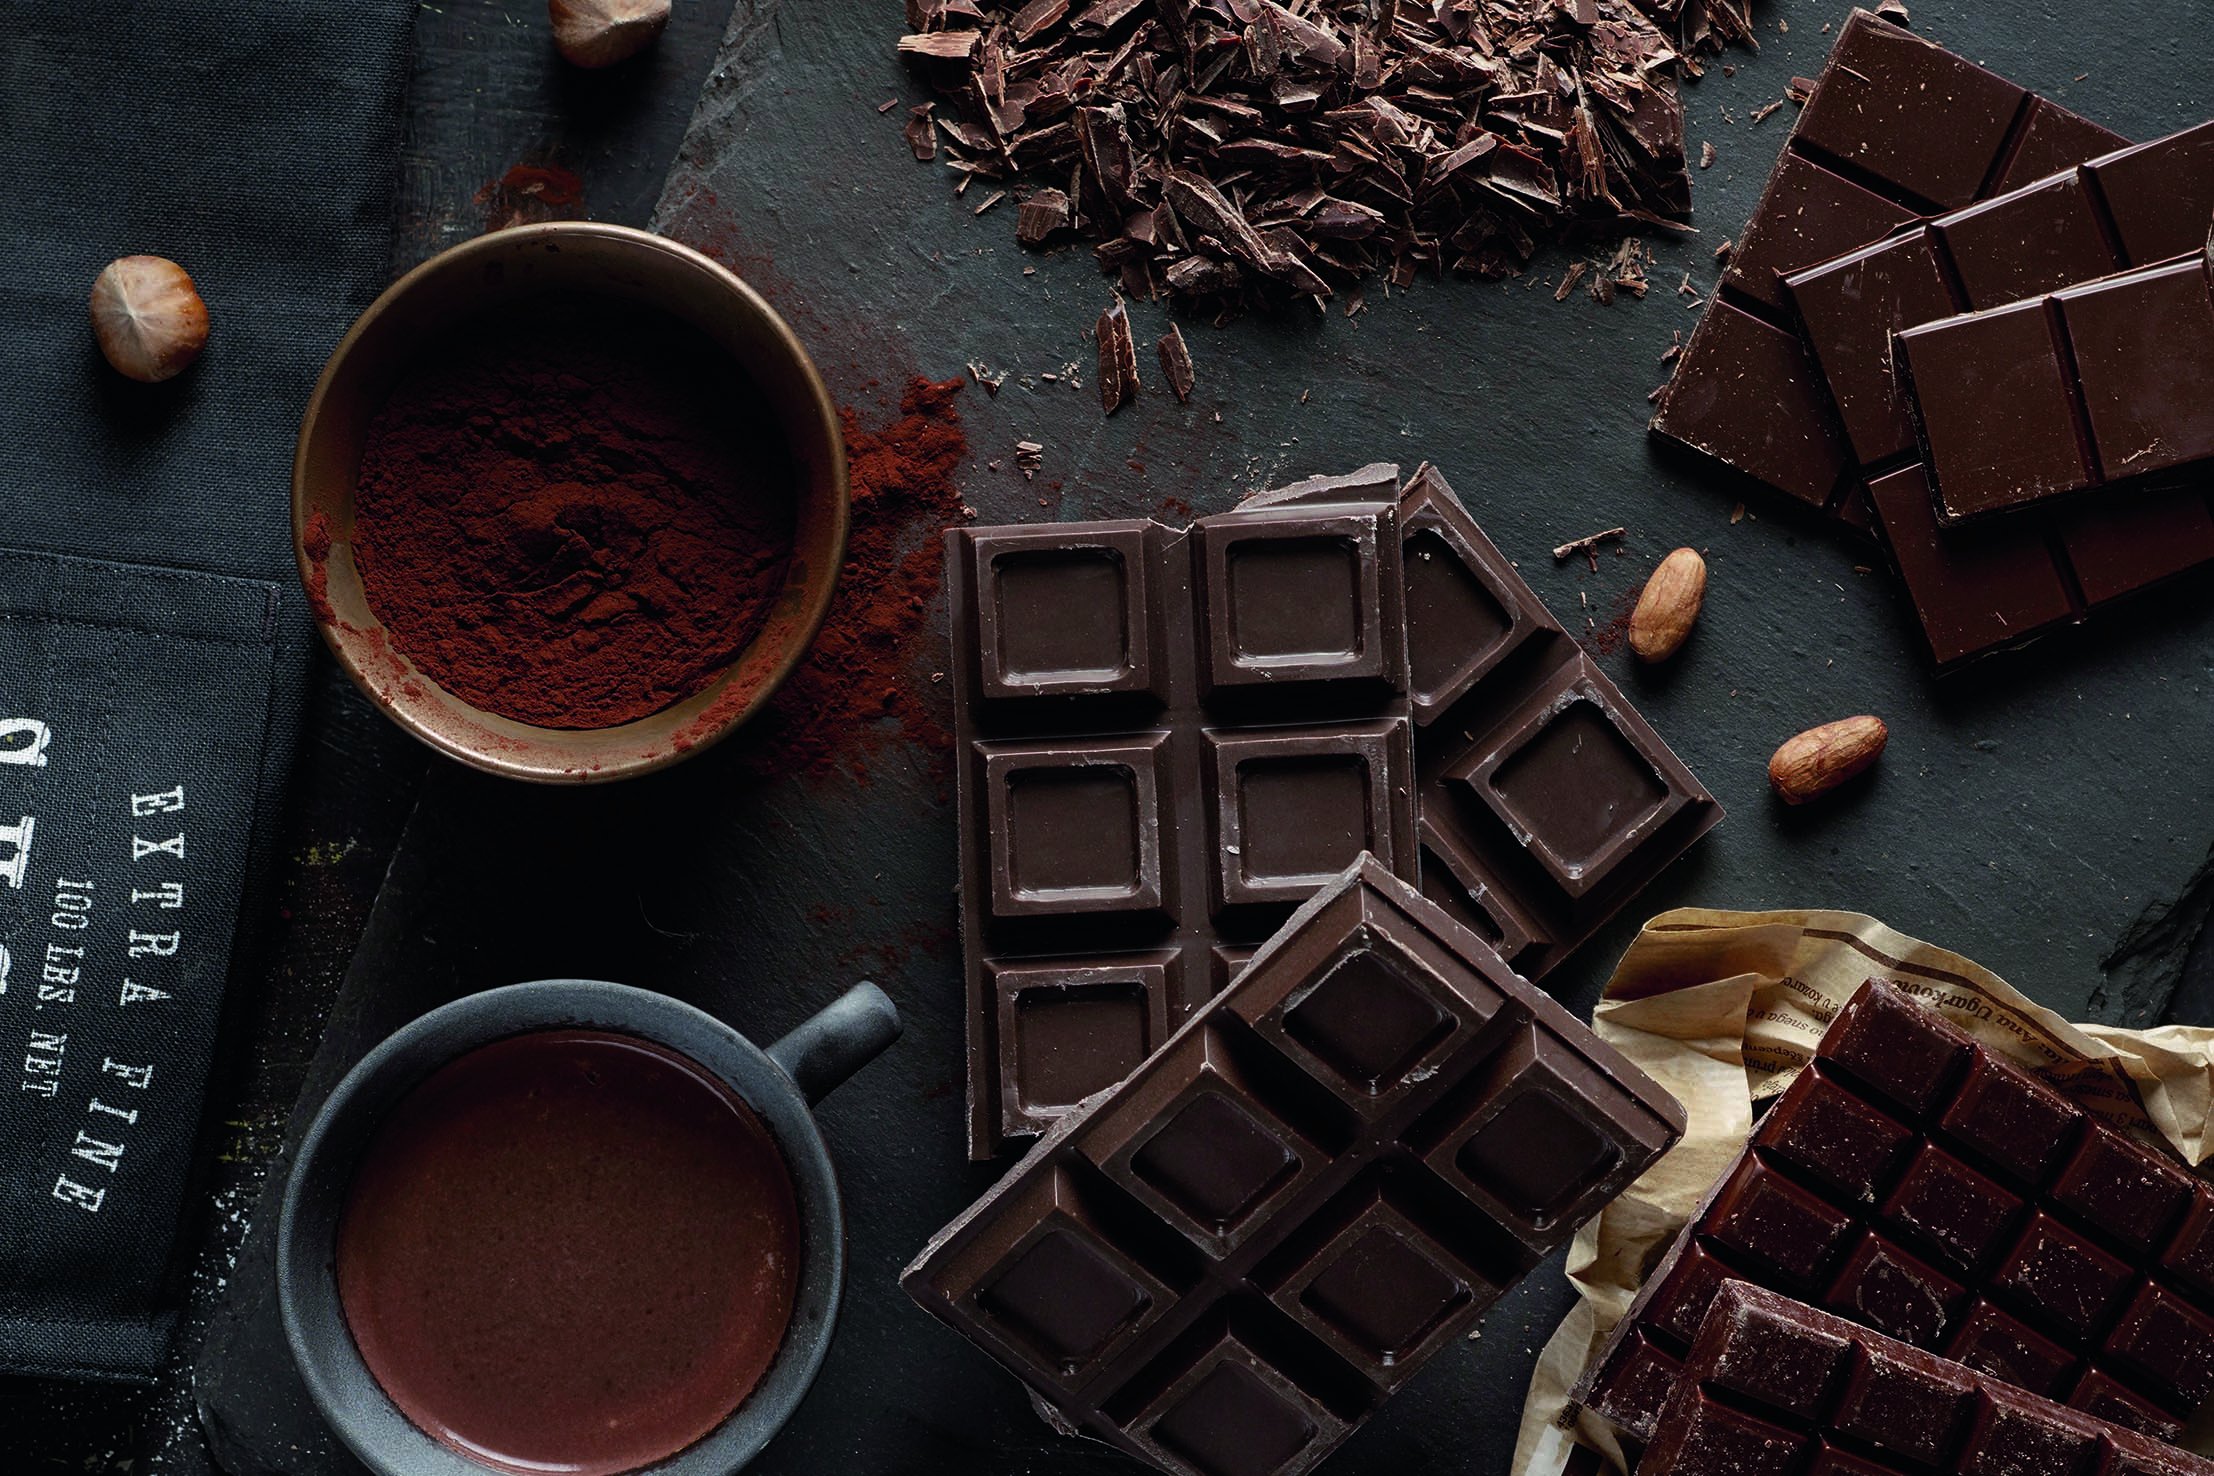 Flüssig bis fest, die Konsistenz von Schokolade ist vielseitig.